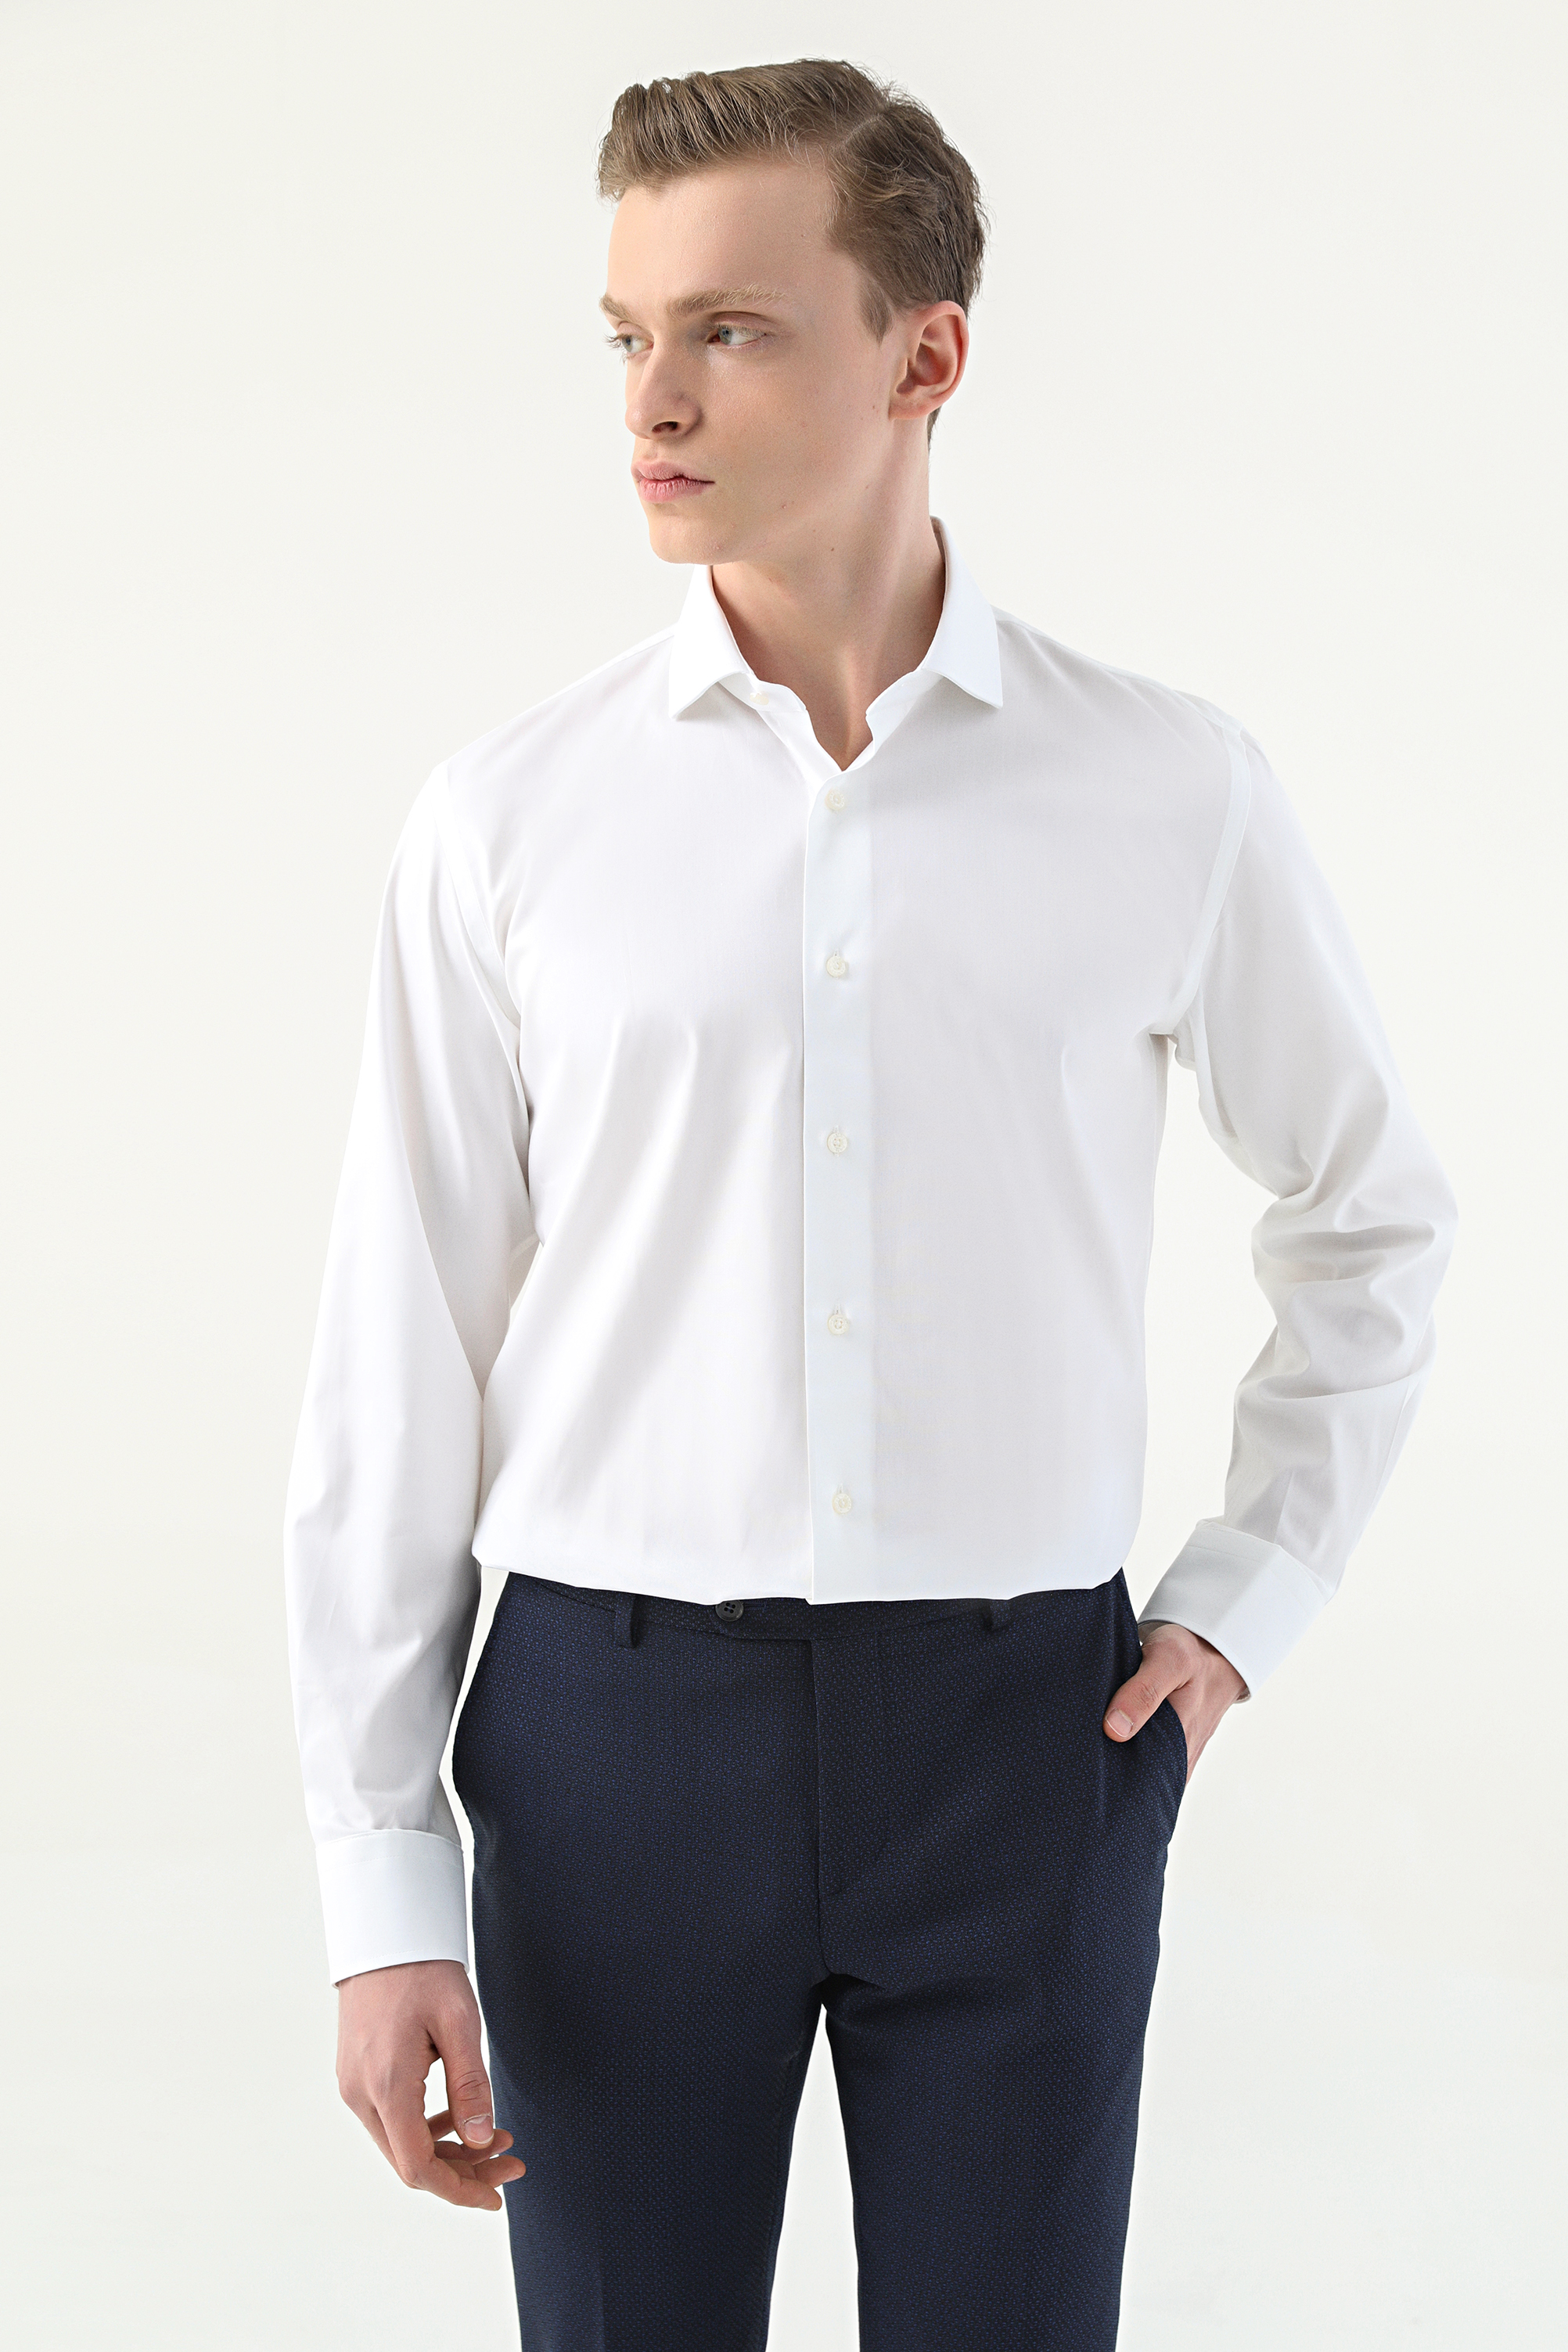 Damat Tween Damat Slim Fit Beyaz Desenli %100 Pamuk Nano Care Gömlek. 2